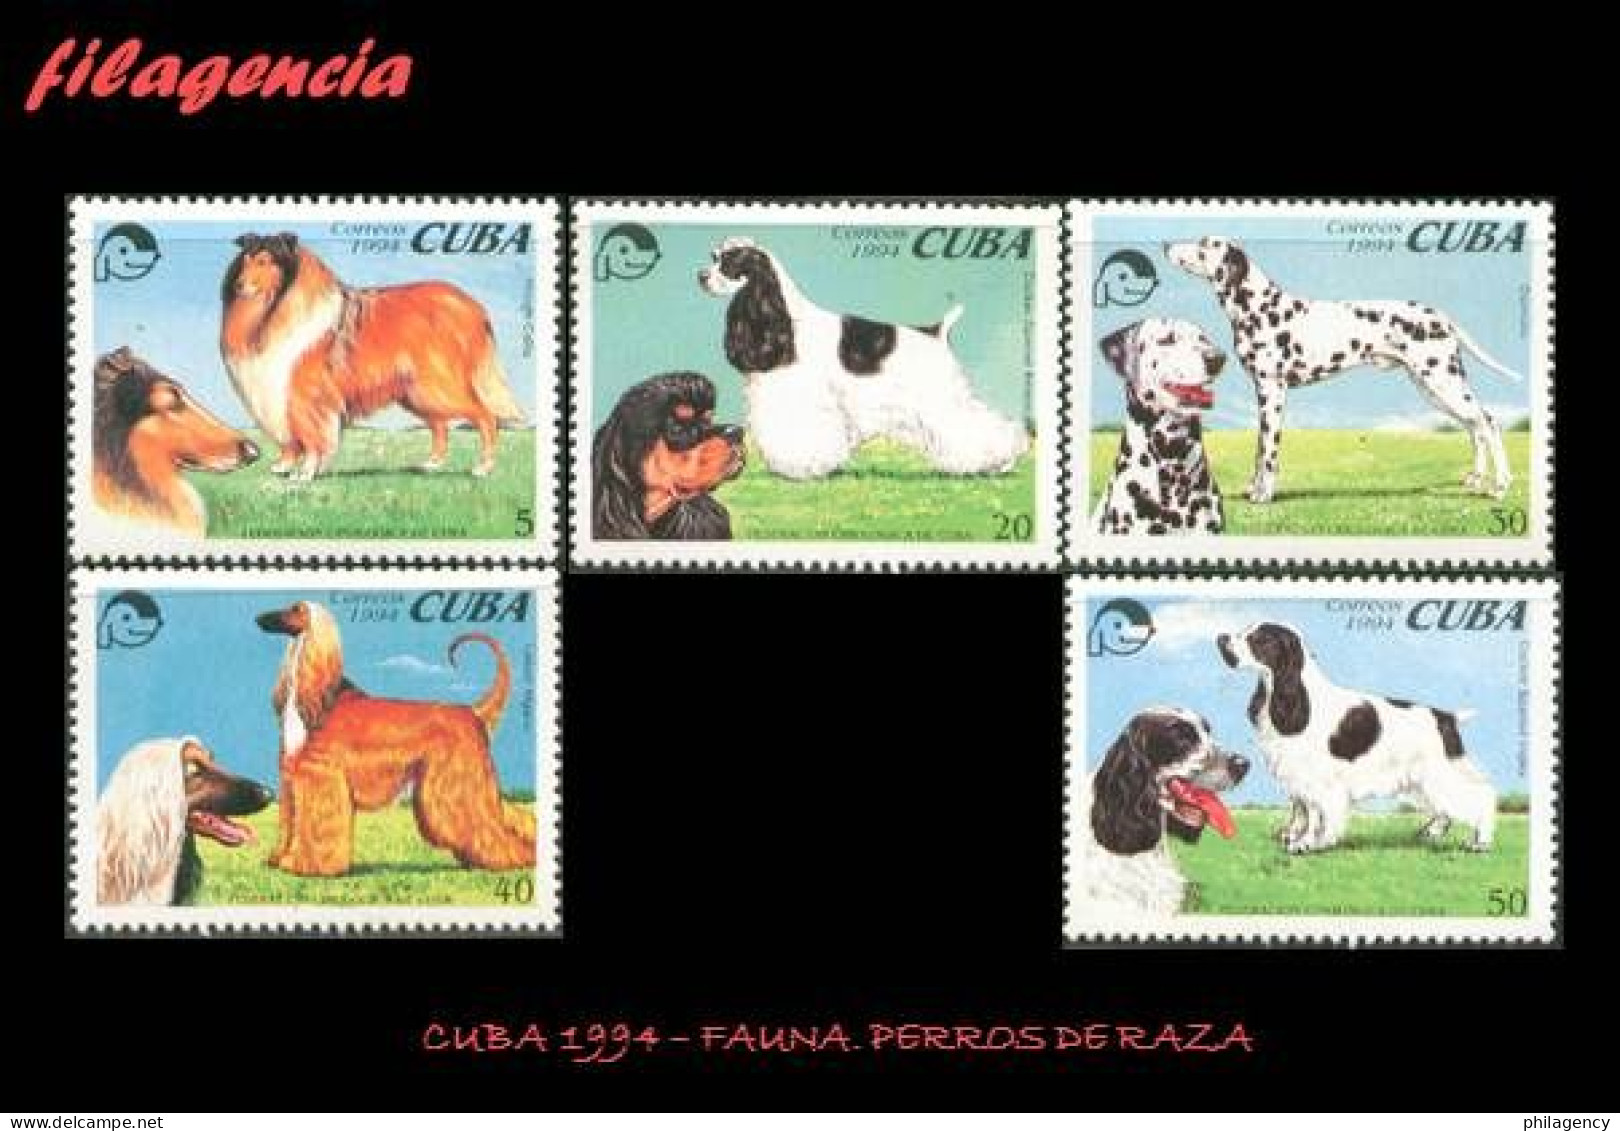 CUBA MINT. 1994-11 FAUNA. PERROS DE RAZA - Unused Stamps